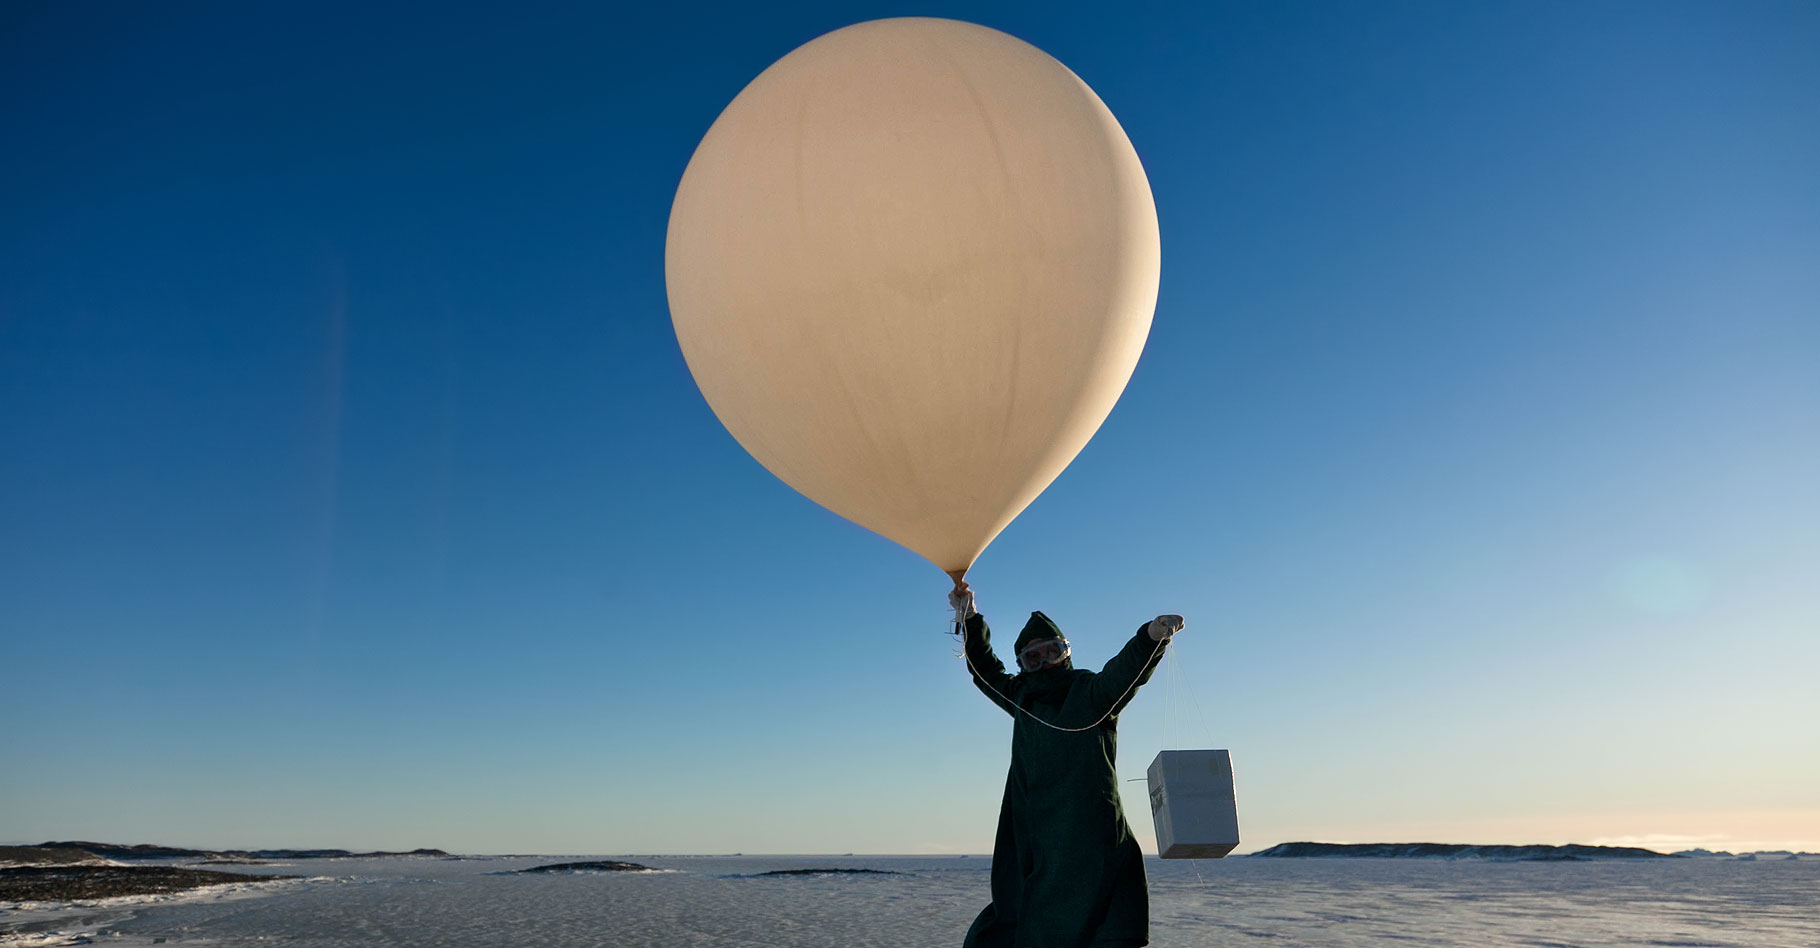 Ballons-sondes, radars et satellites météorologiques